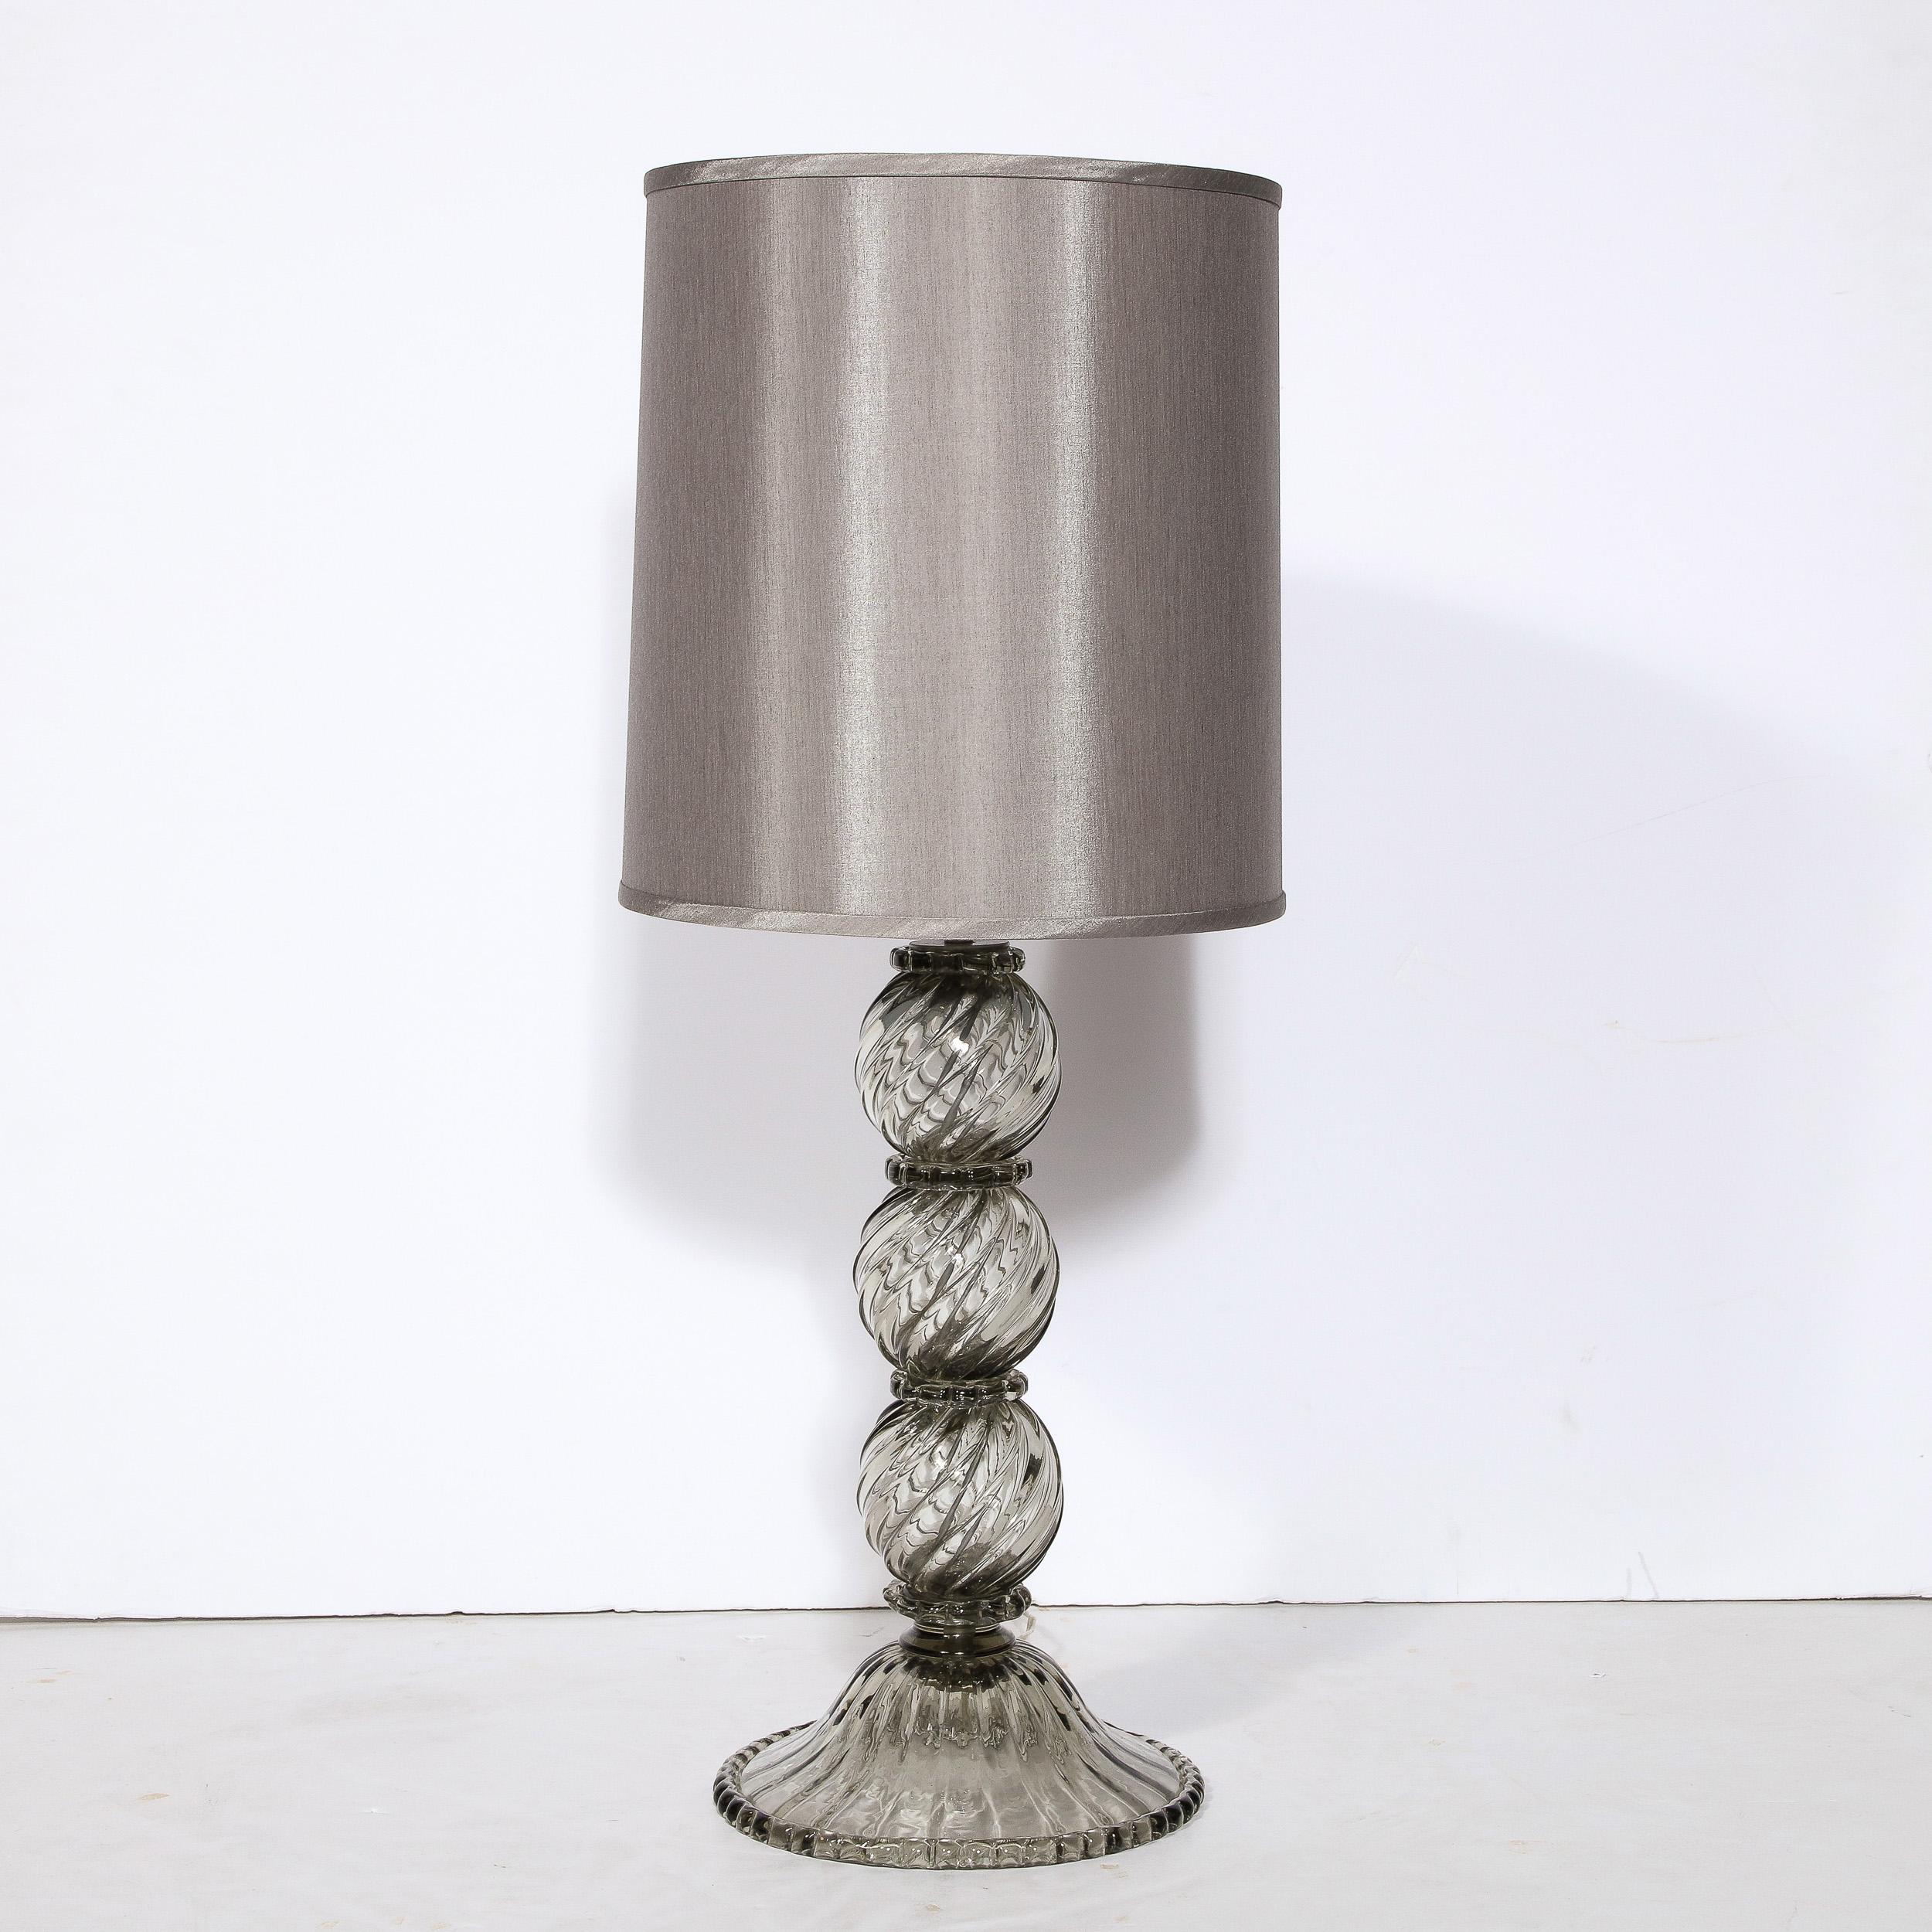 Cette étonnante lampe de table moderniste a été réalisée à Murano, en Italie, l'île située au large de Venise et réputée depuis des siècles pour sa production de verre de qualité supérieure. Elle présente un verre de Murano fumé semi-transparent